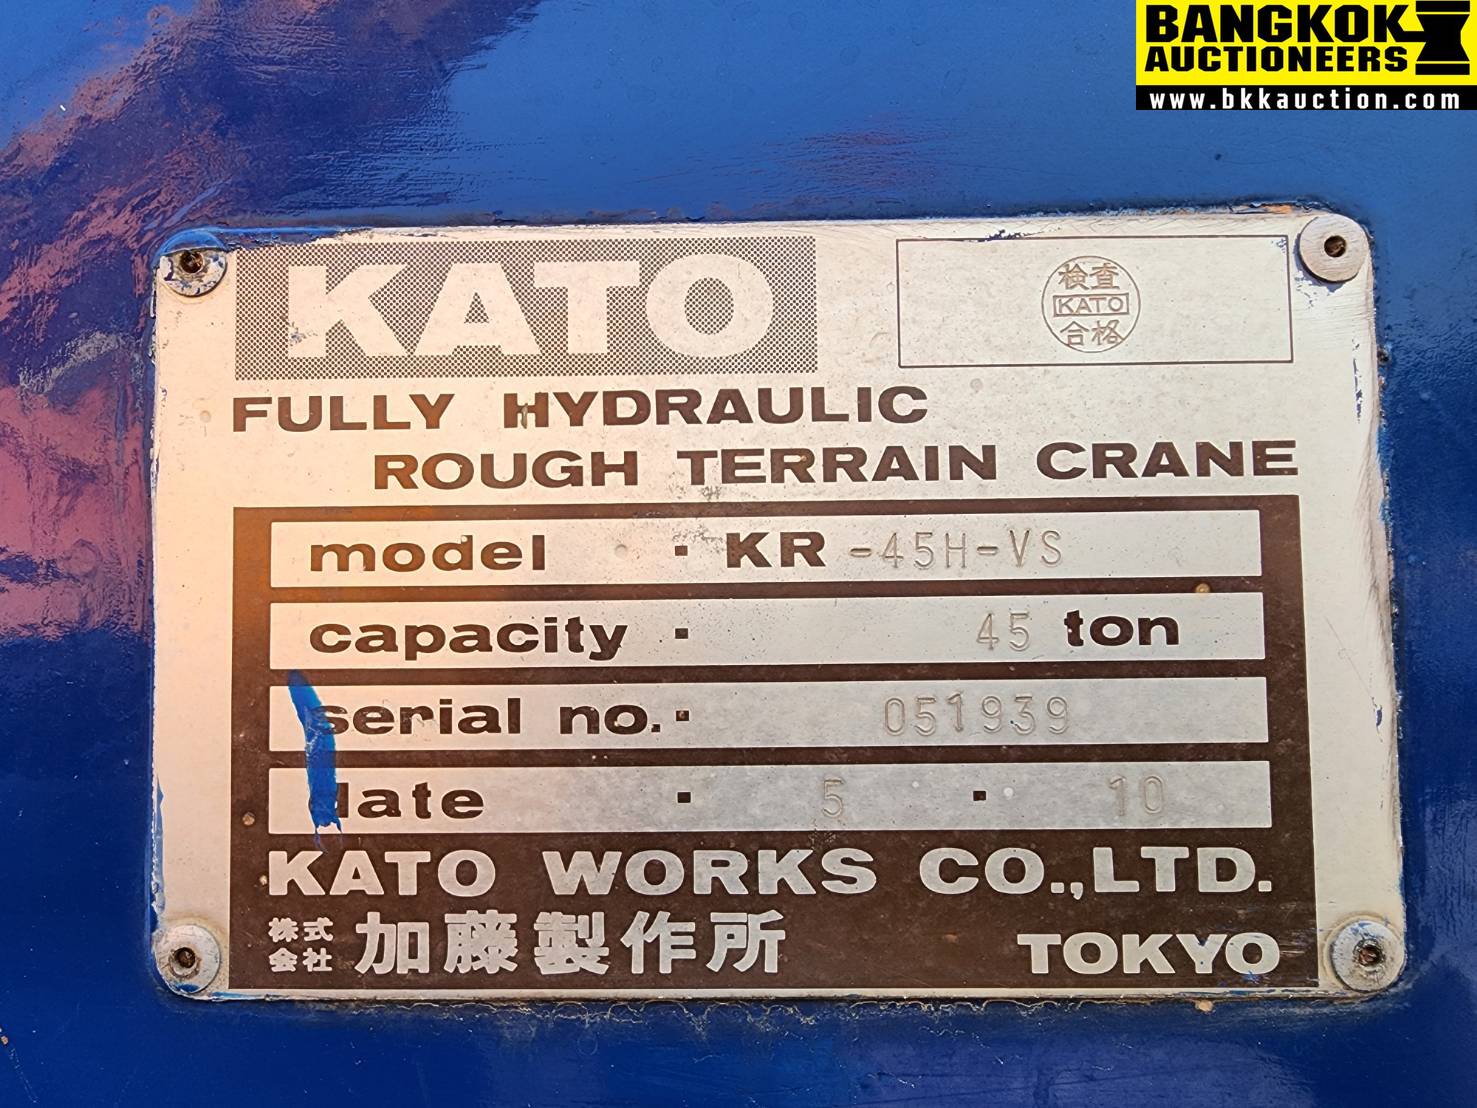 รถเครน KATO KR45H-VS-051939